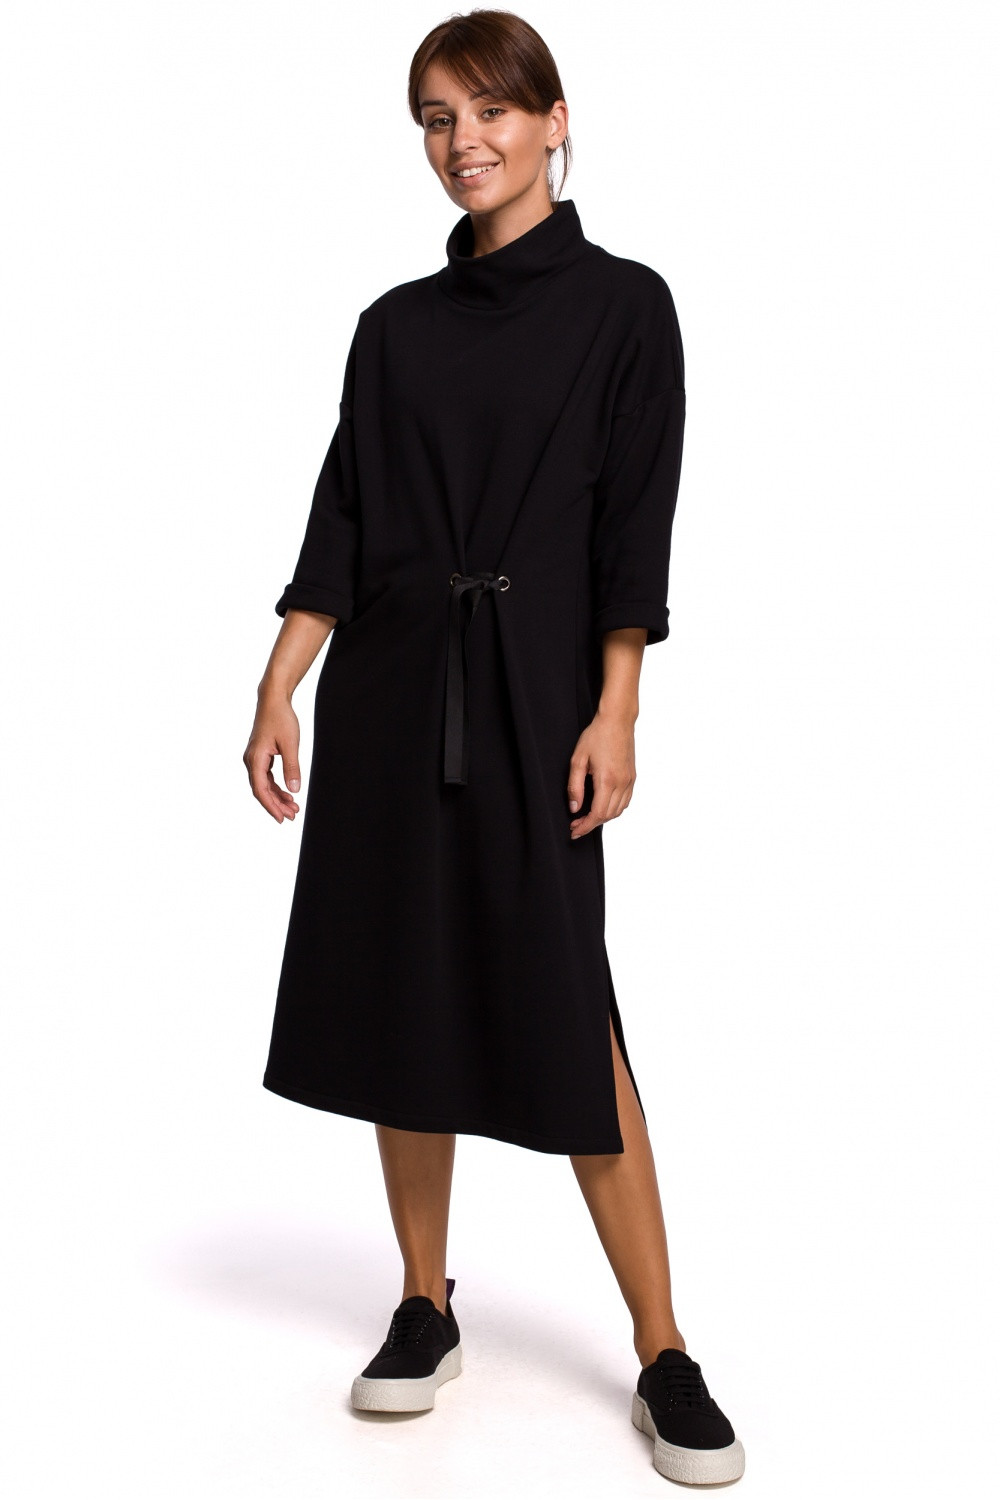 Dámské šaty model 147160 - BeWear černá S/M